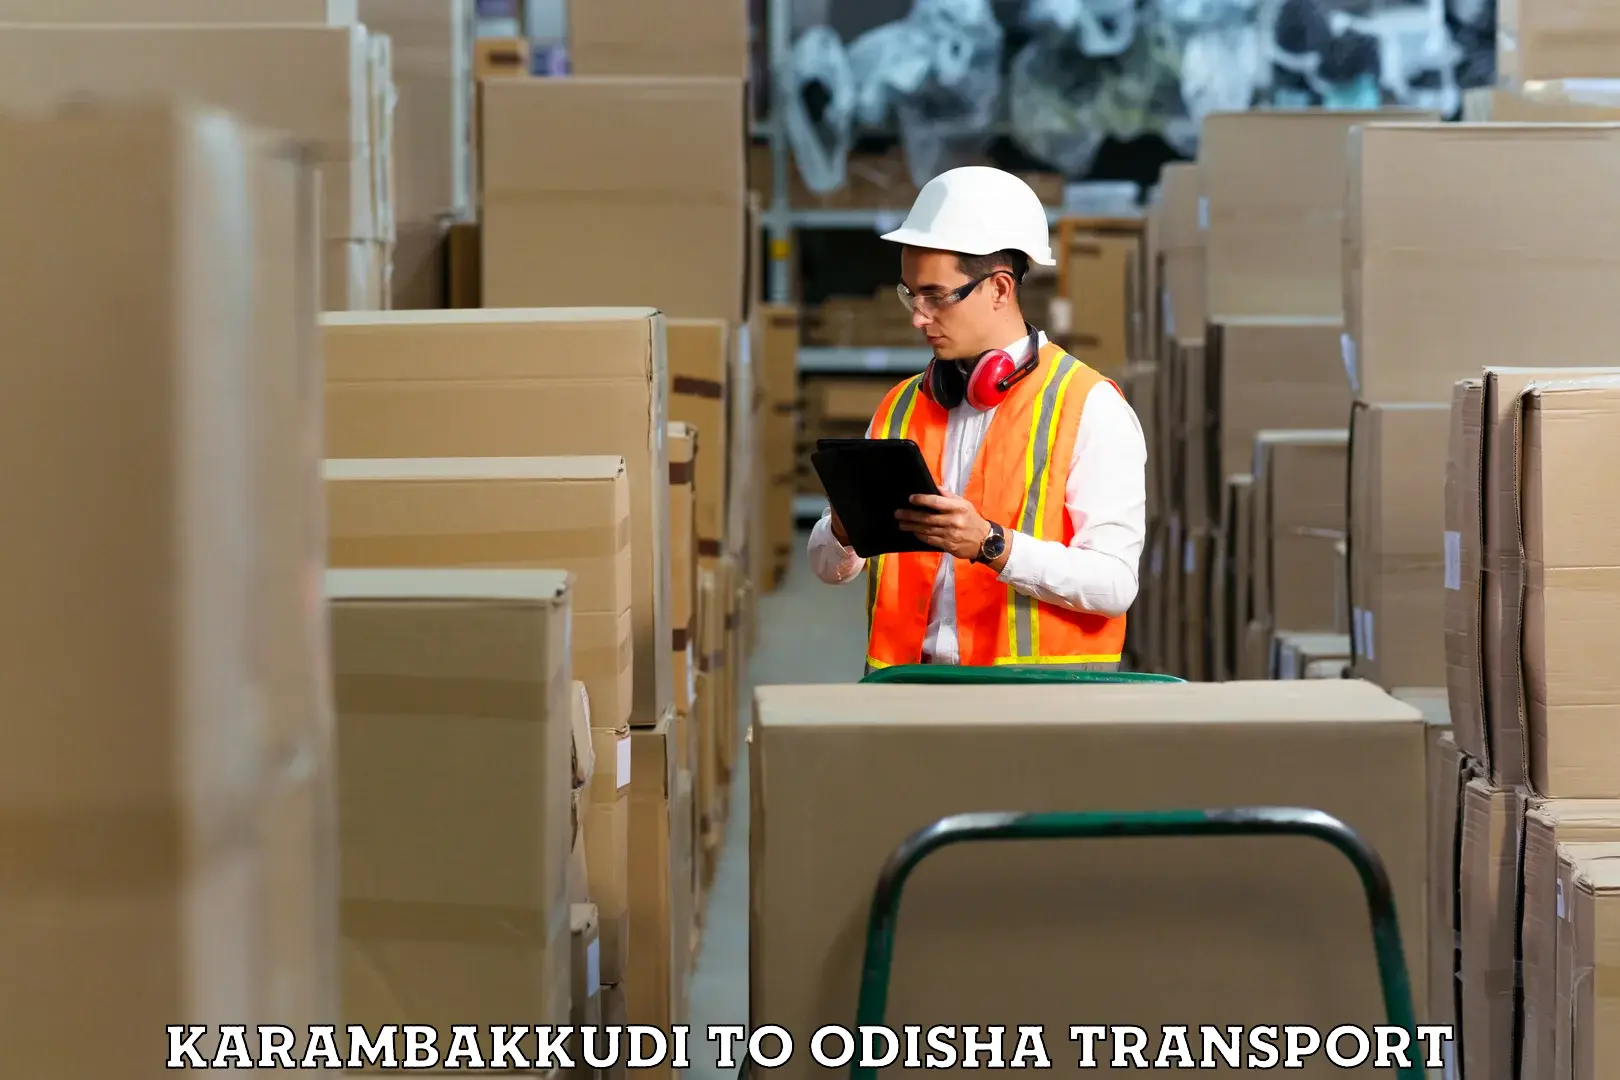 Container transportation services Karambakkudi to Jaleswar